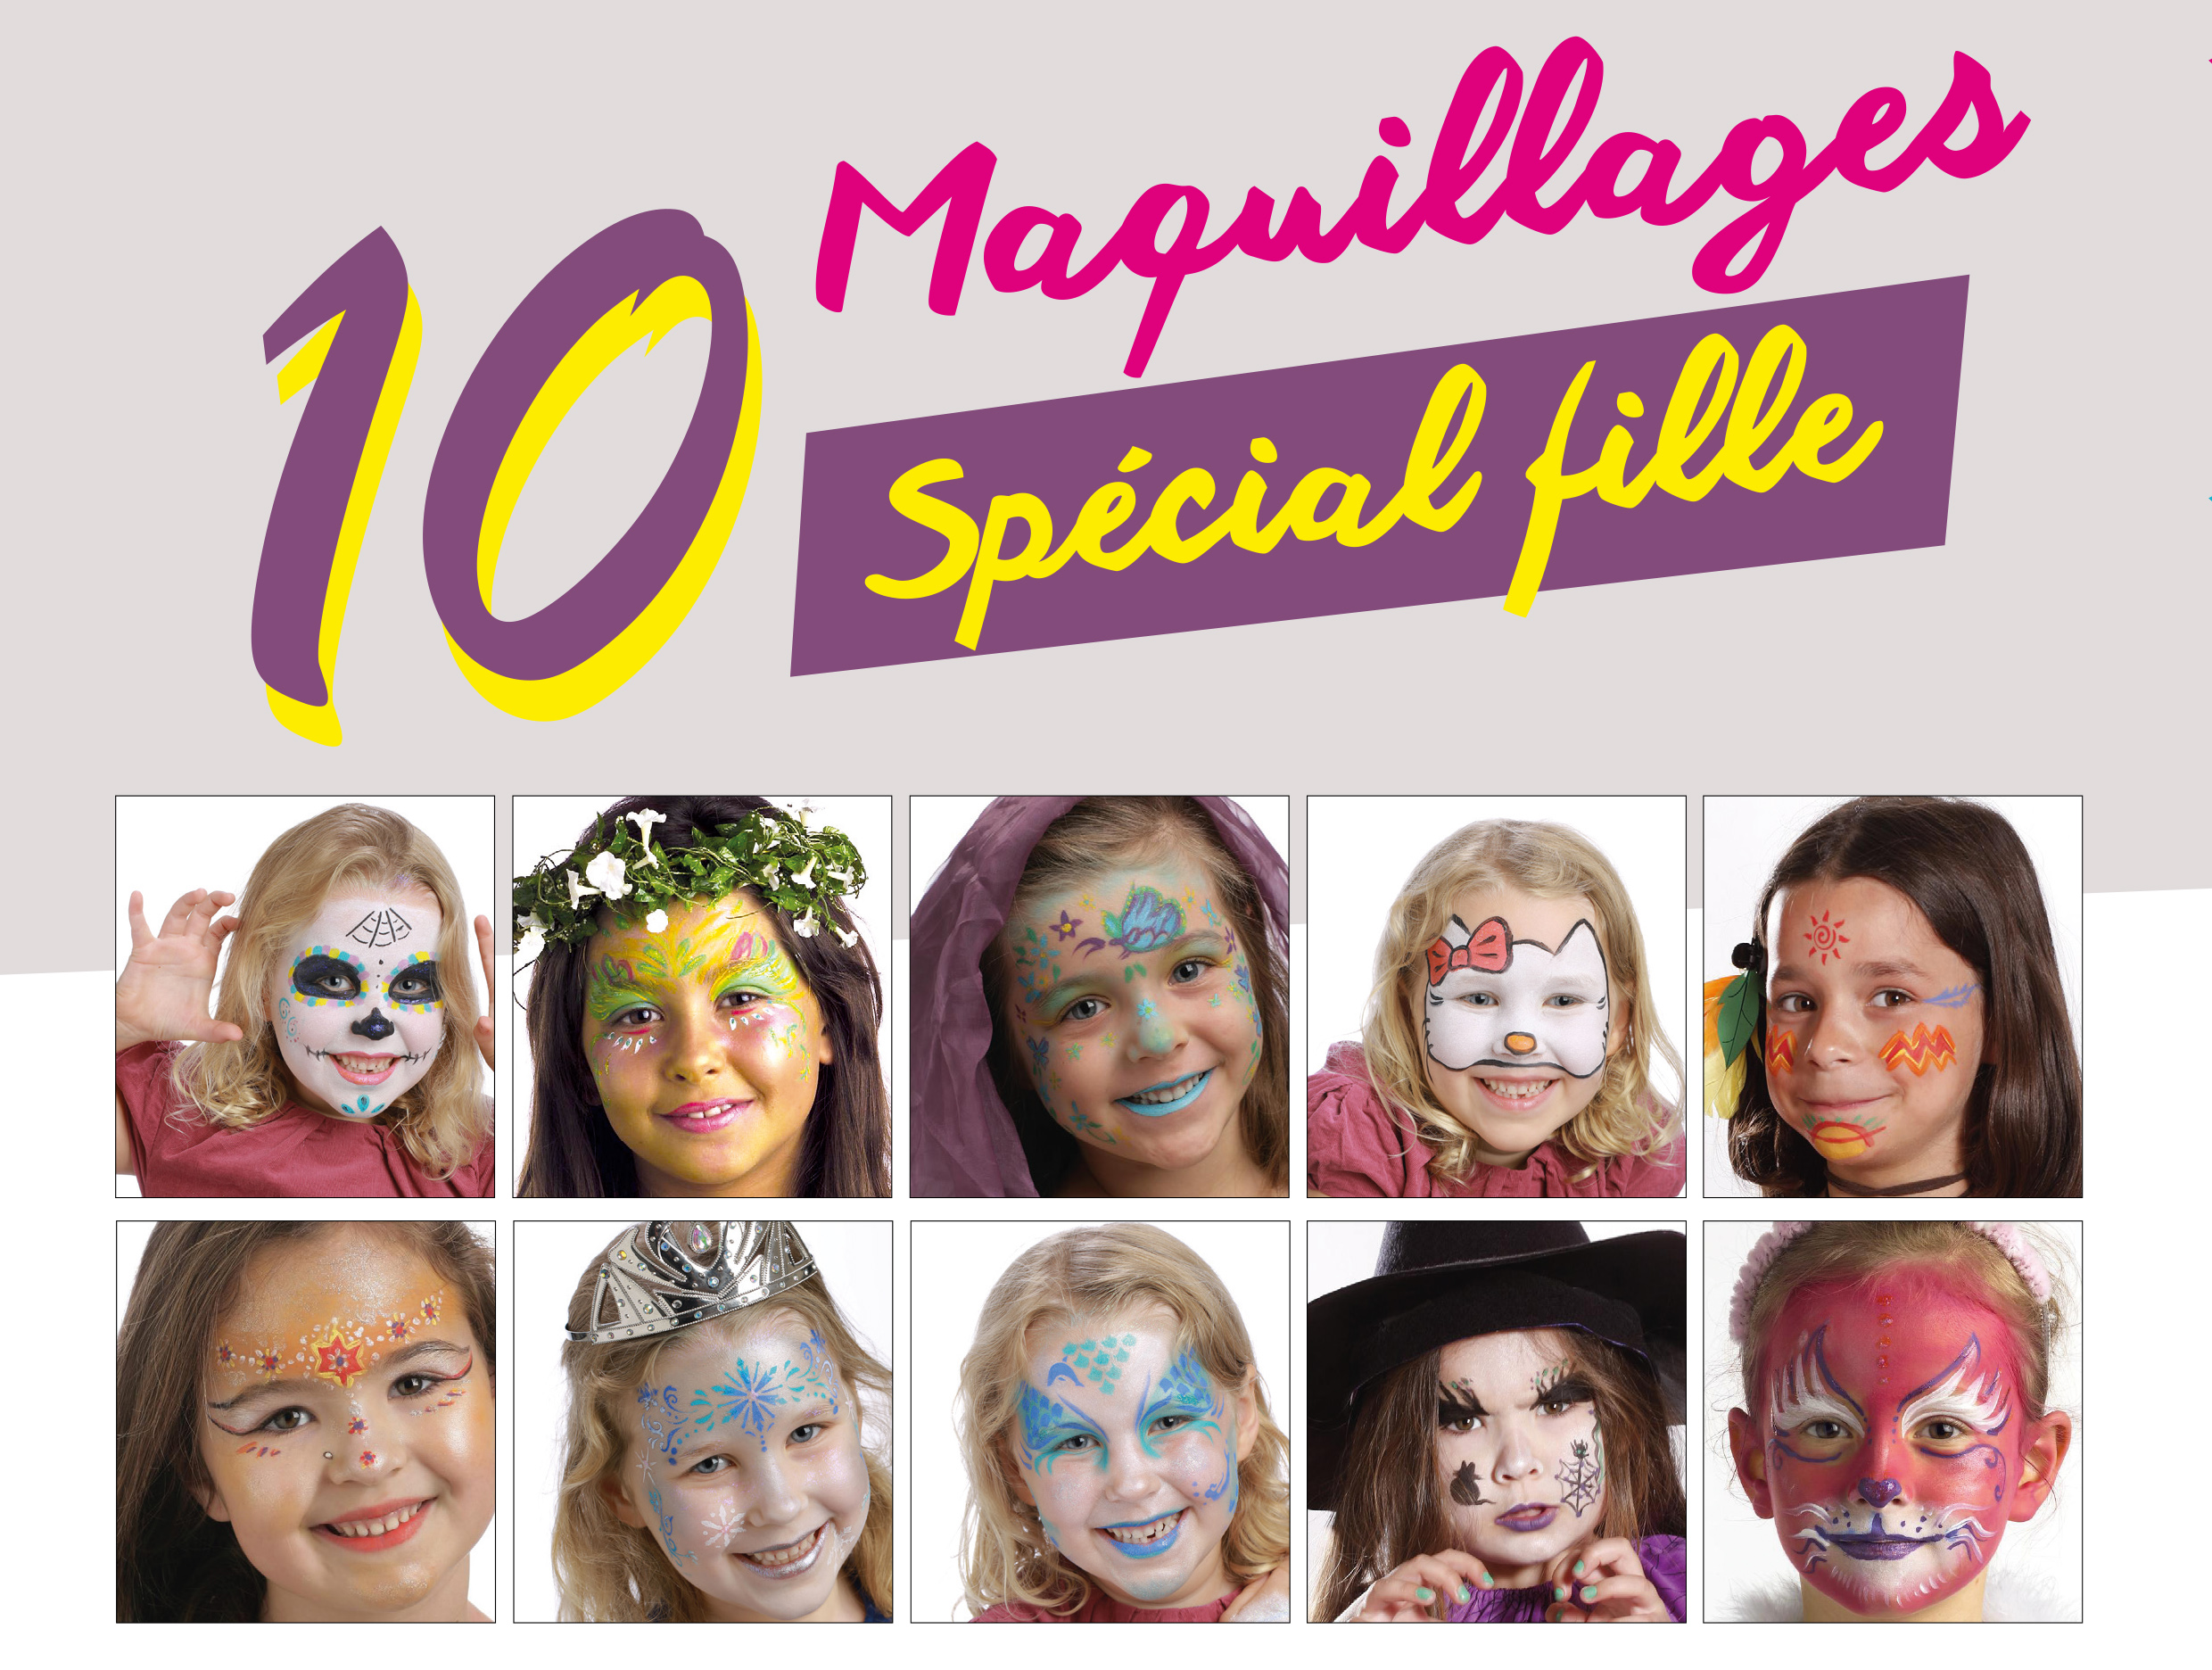 2 idées maquillage de carnaval pour les enfants - La Belle Adresse